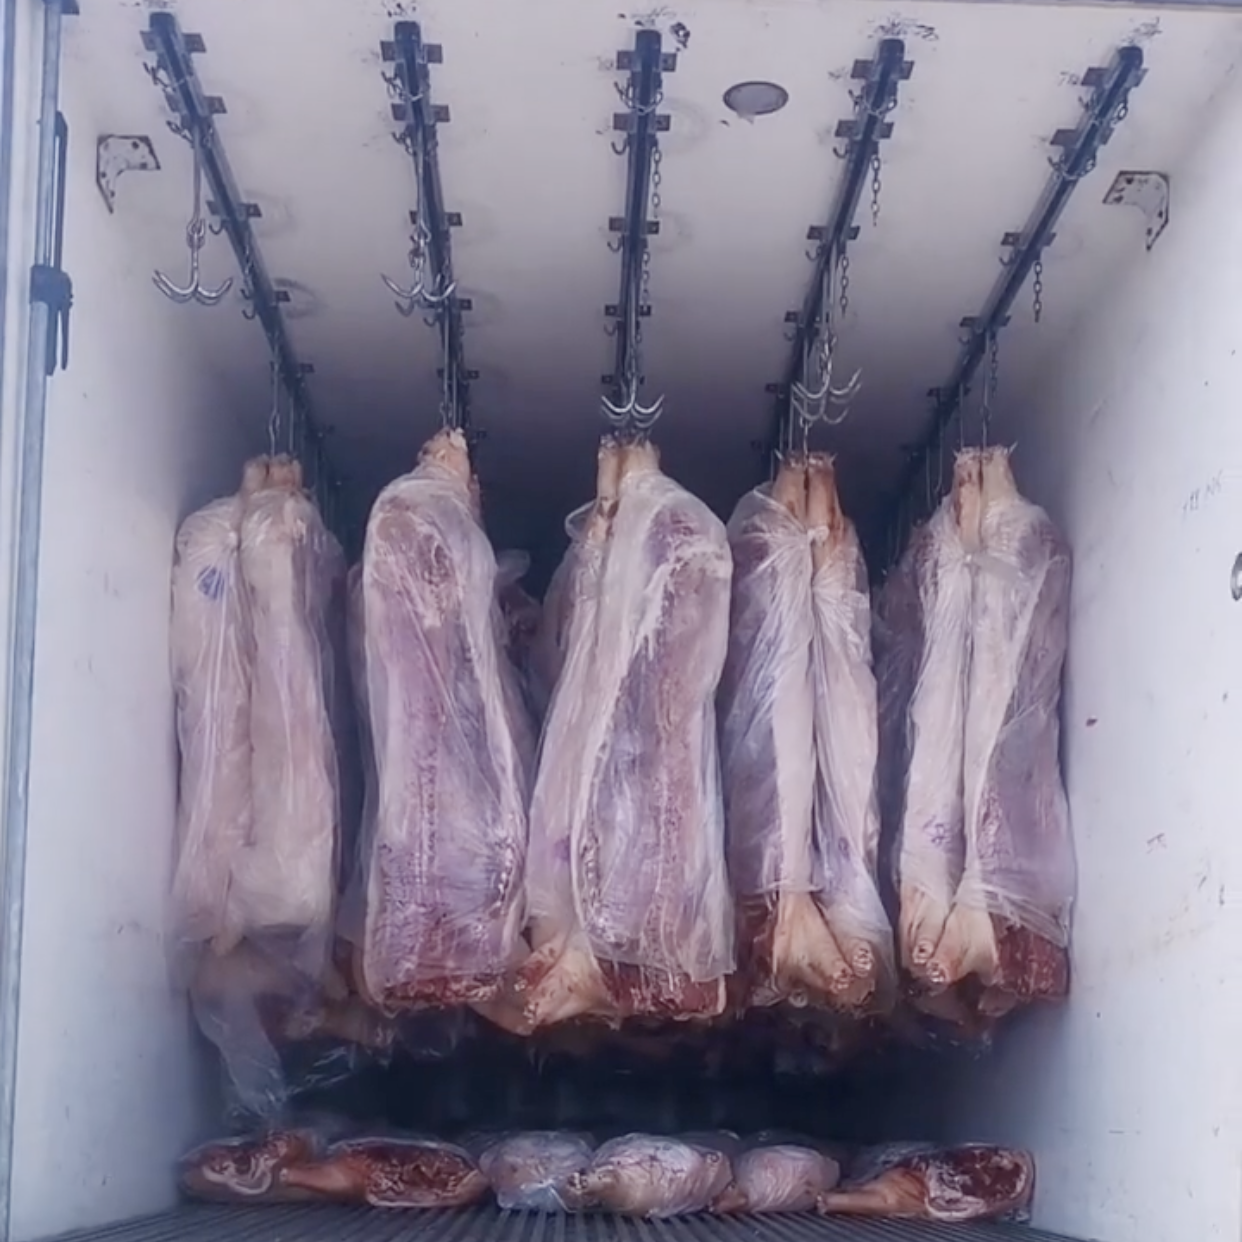 Carrocería de camión refrigerado para colgar en el techo de Meat Carass